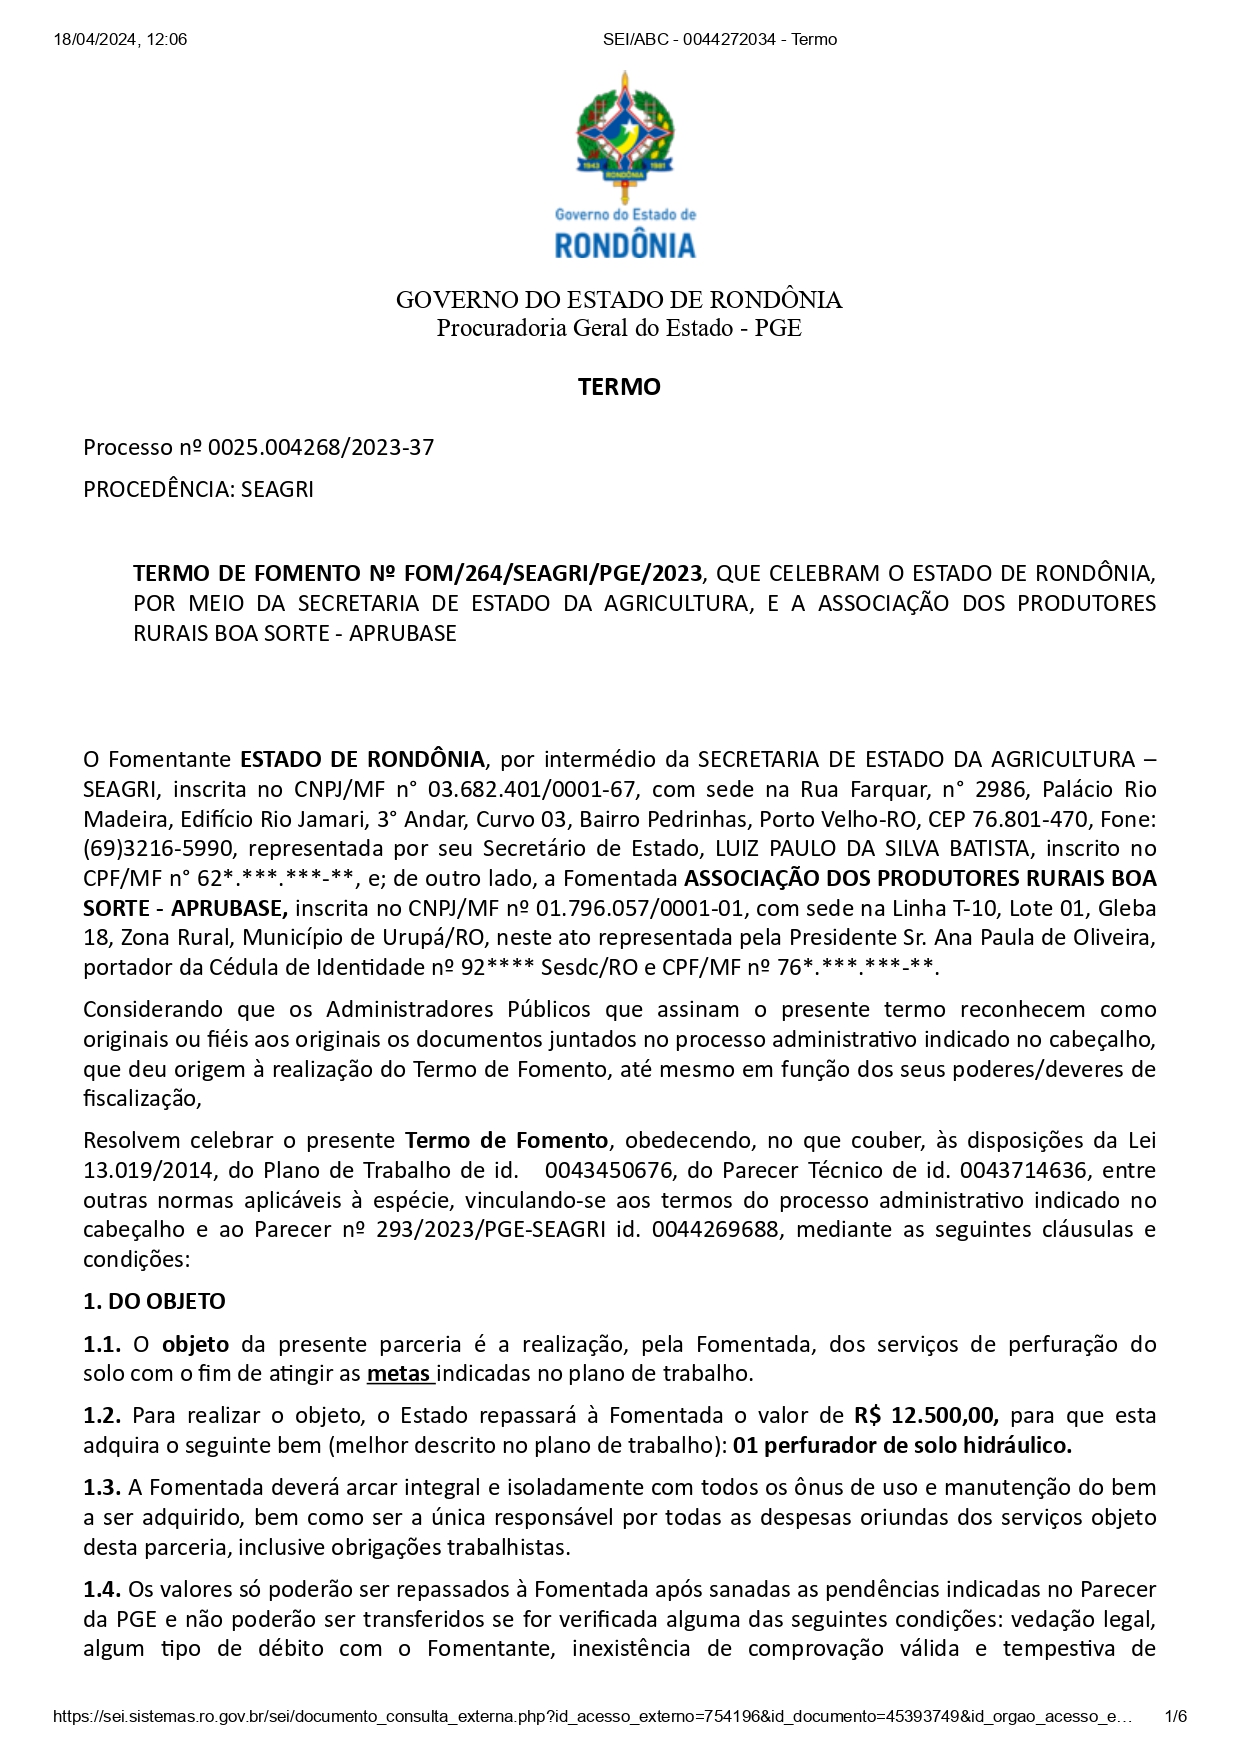 TERMO DE FOMENTO Nº FOM/264/SEAGRI/PGE/2023,